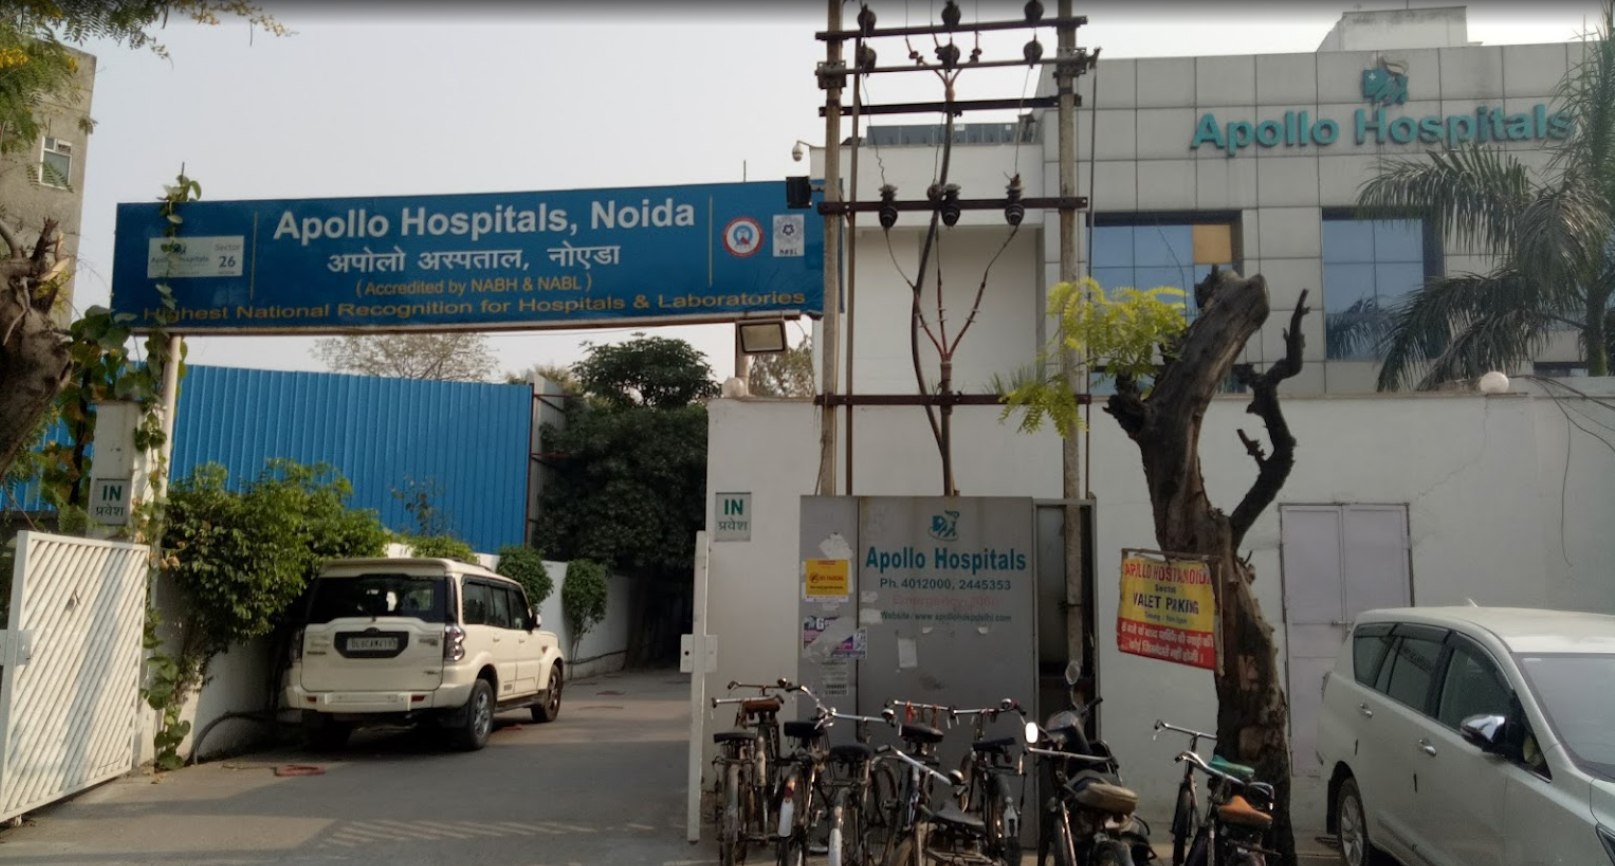 Apollo Hospitals - Noida